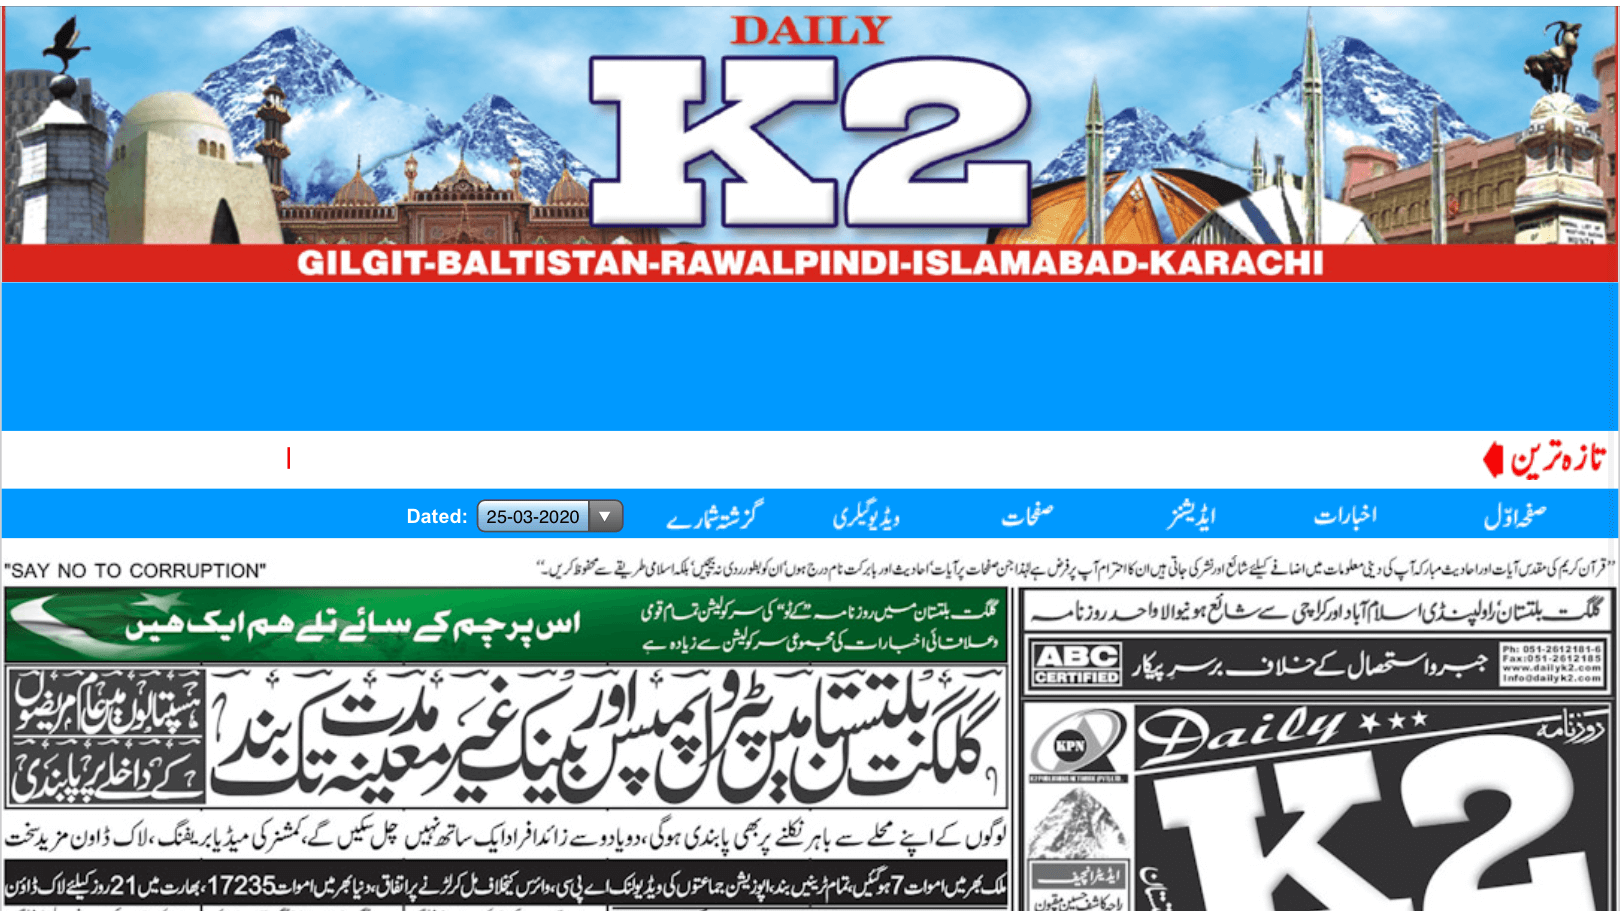 pakistan urdu newspapers 14 daily k2 website